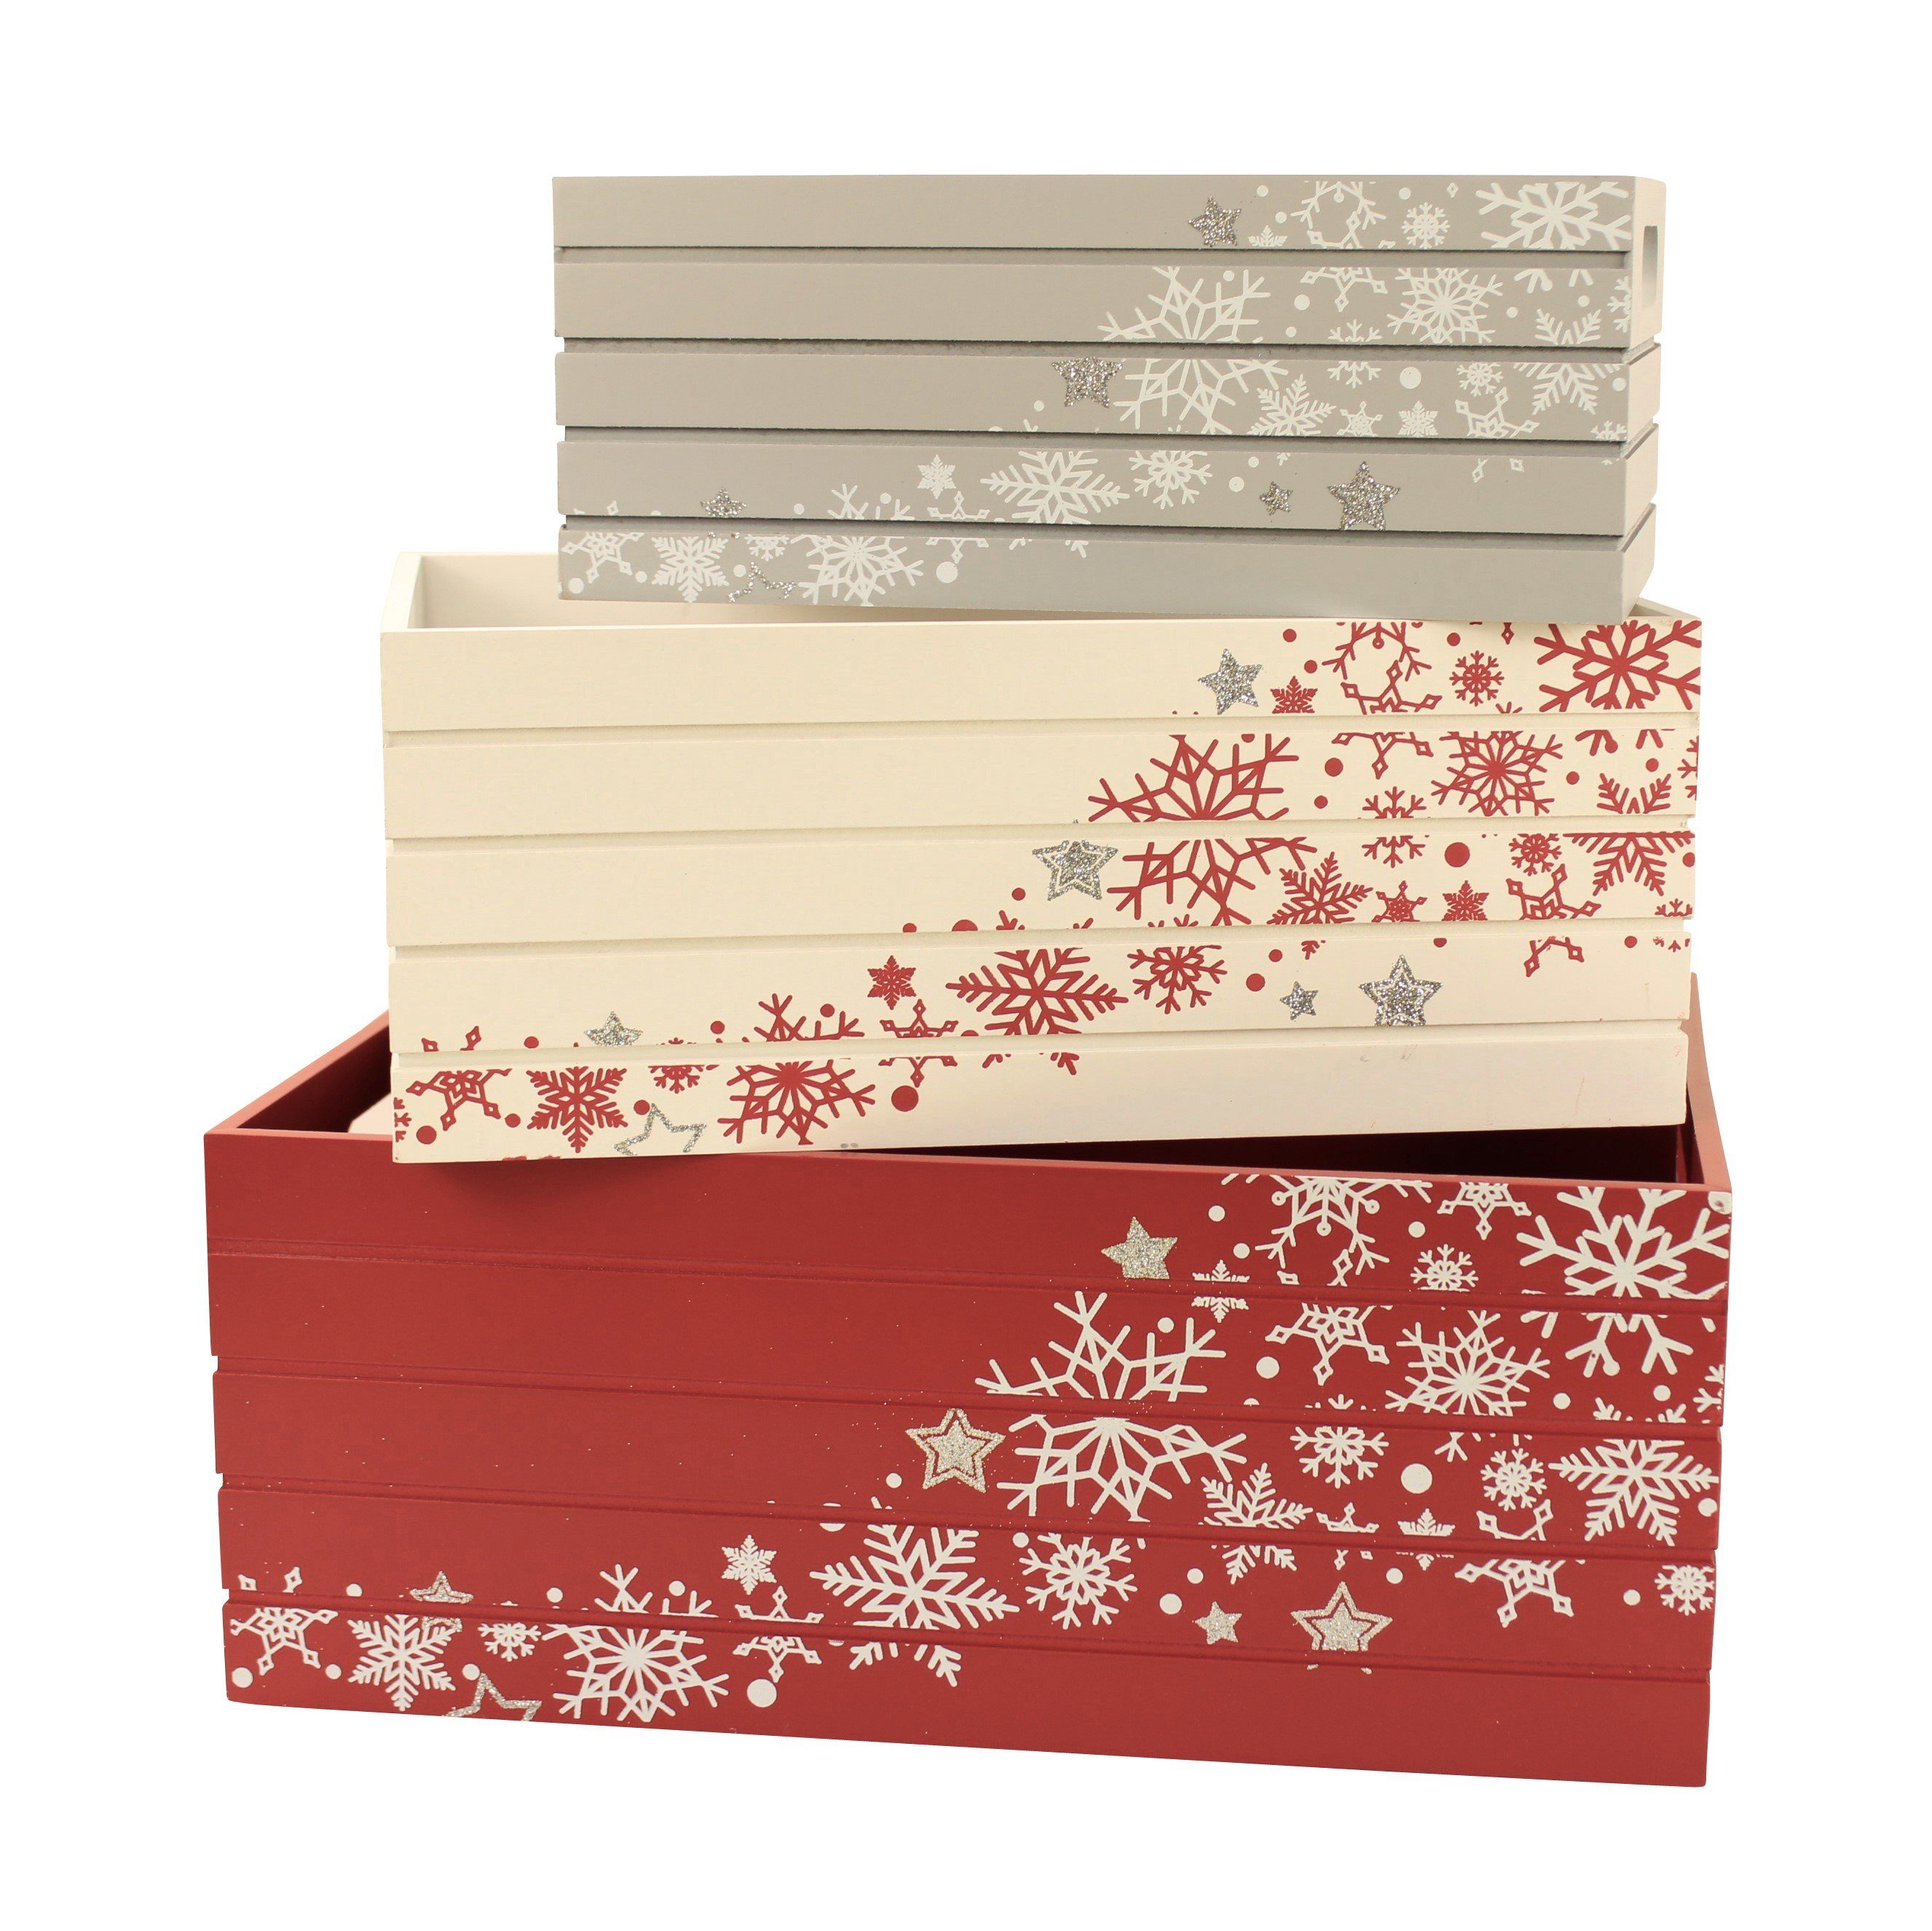 Online-Fuchs Geschenkbox 3er Set Deko Holzkisten, ideal als Geschenkverpackung zu Weihnachten - (Geschenkpapier, Geschenktüten, bedruckt mit Sternen und Schneeflocken, Weinkisten-Art)